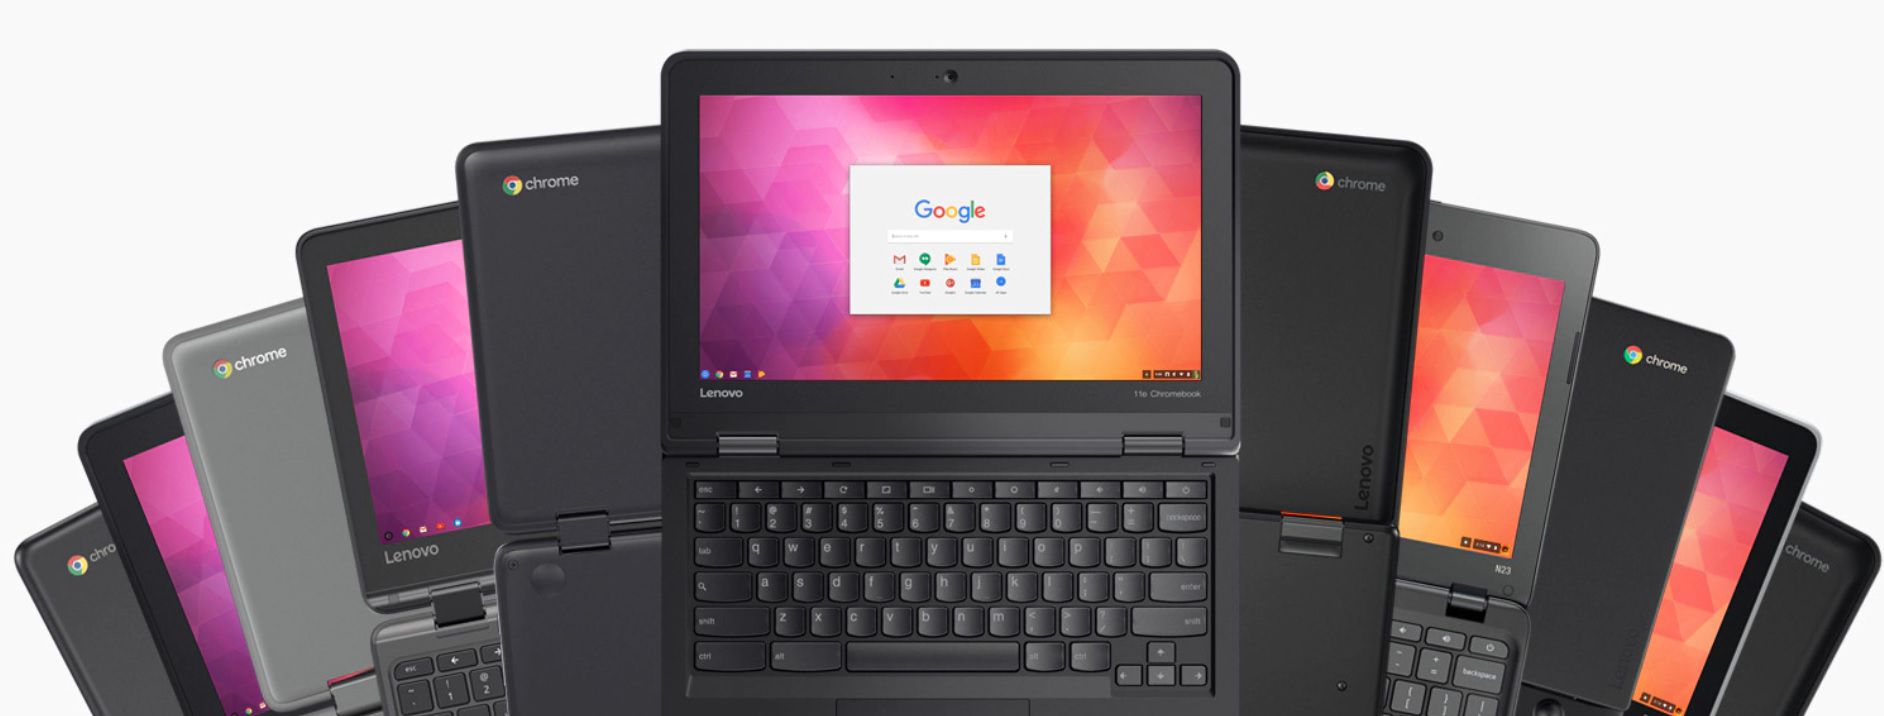 Chromebooks da Lenovo exibidos em uma visualização em leque.